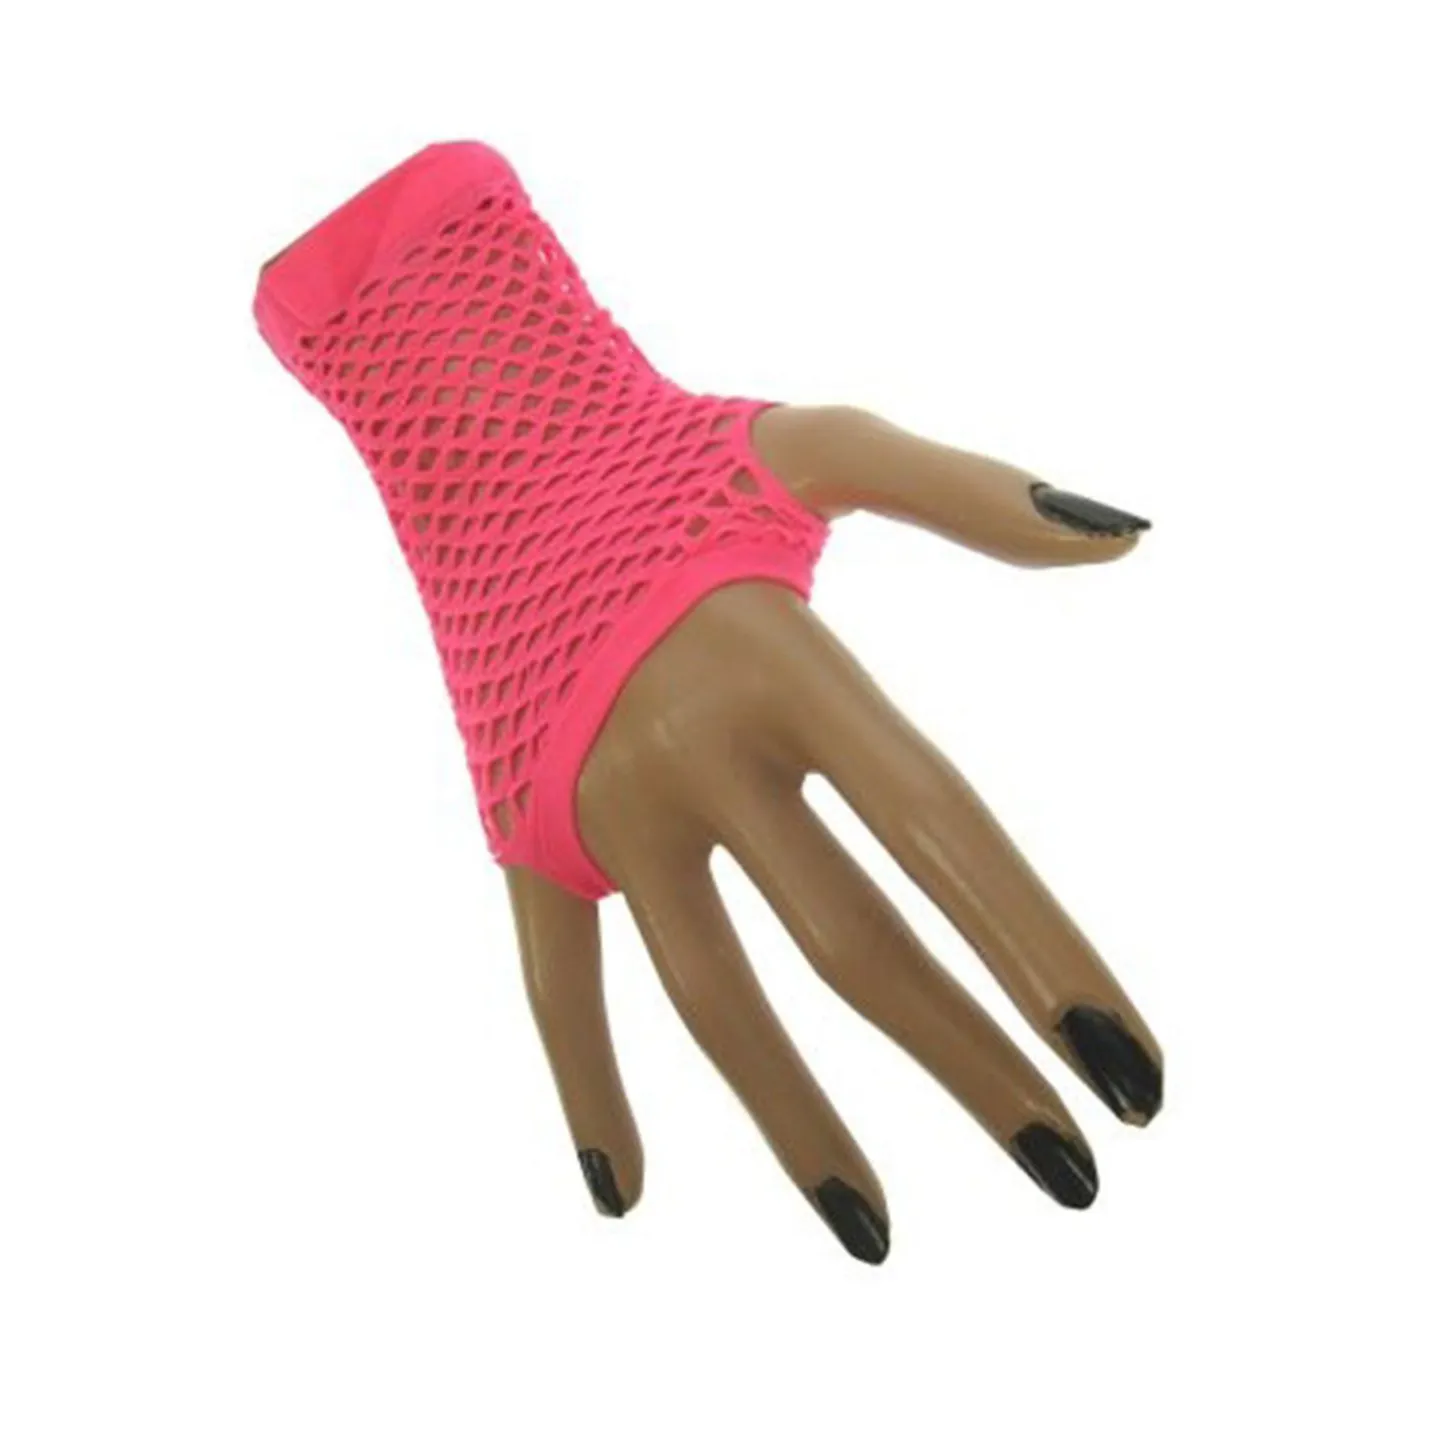 Visnet handschoenen fluor roze kopen.